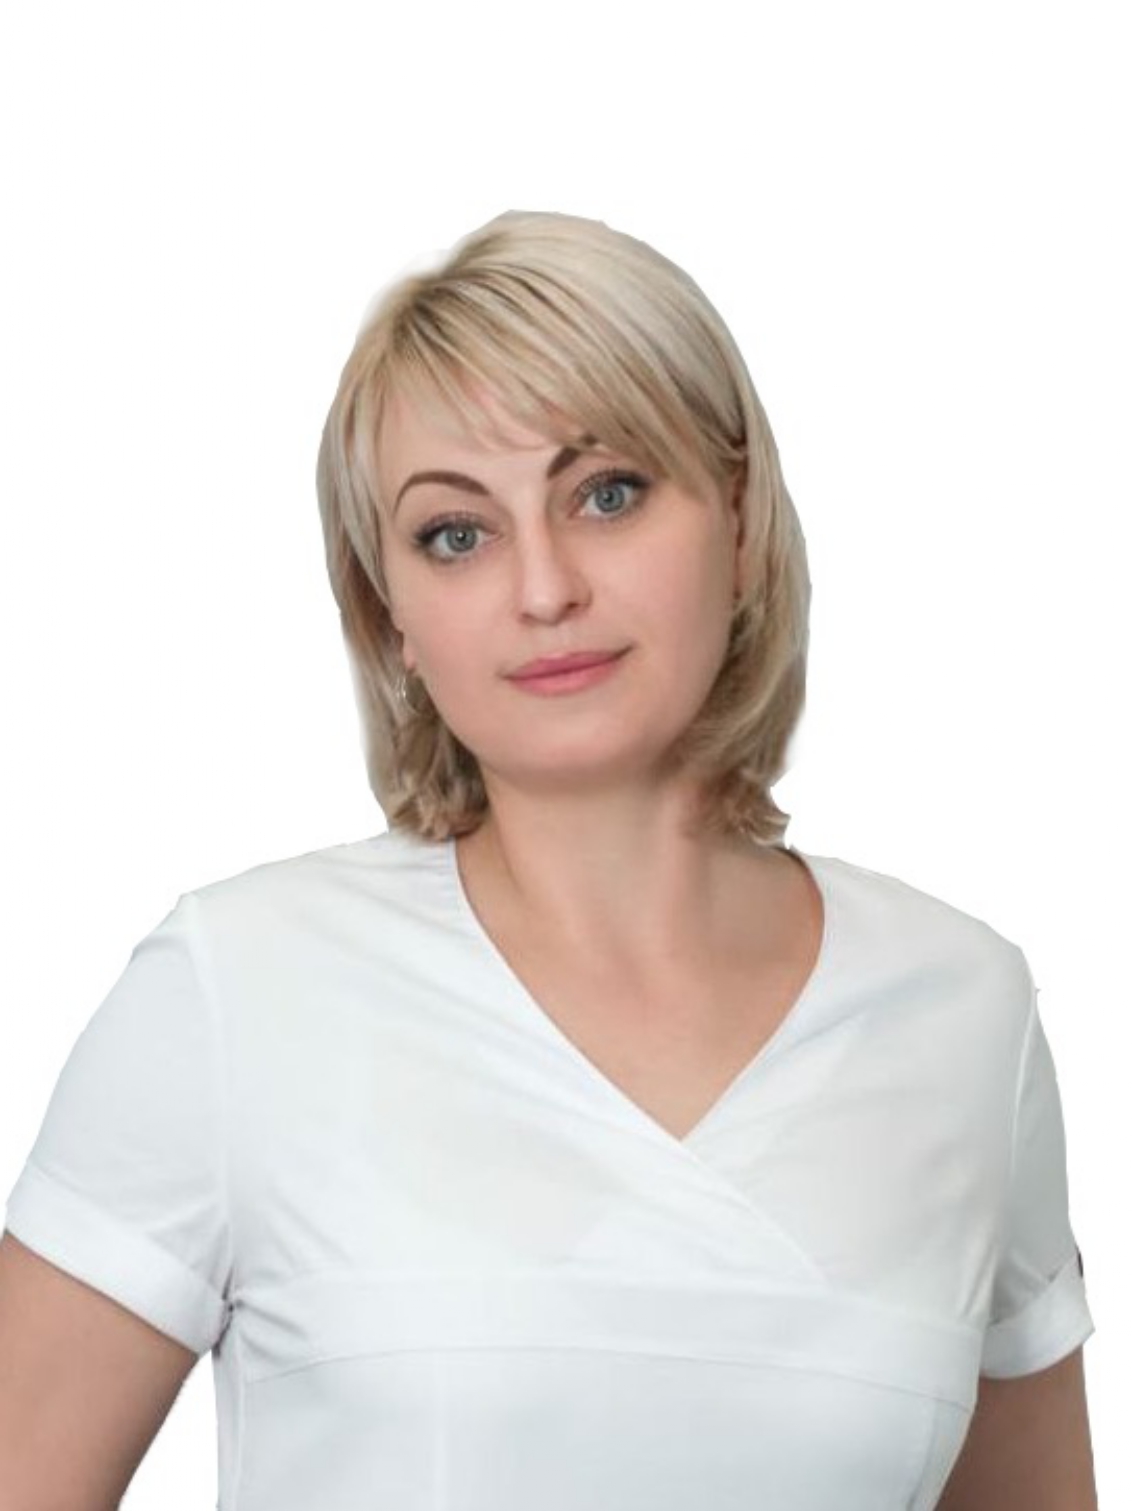 Харченко Светлана Григорьевна - стоматологическая клиника L70